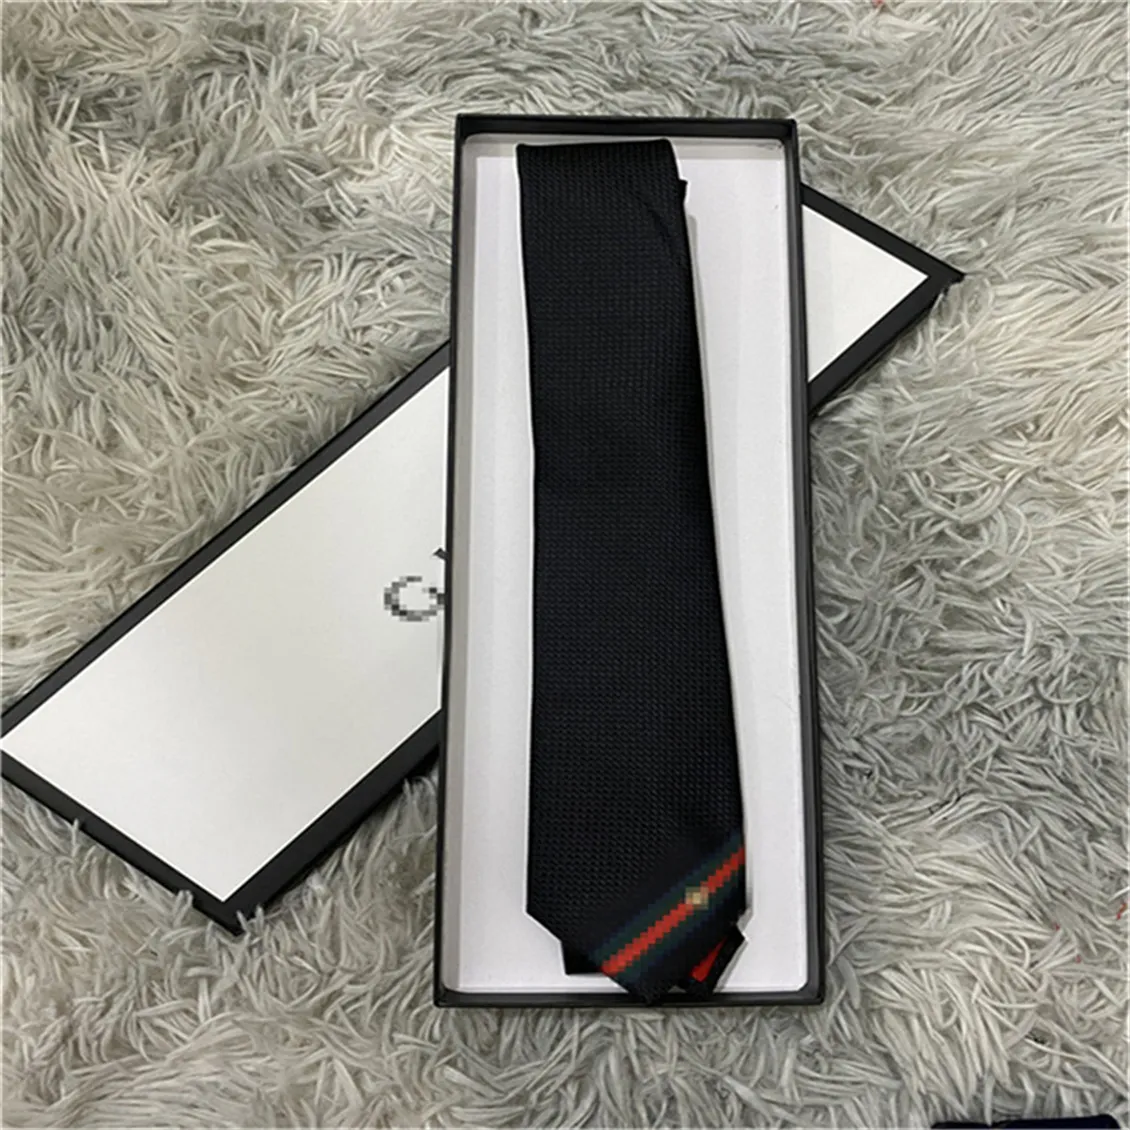 GNeue Herren-Krawatten, neue Seiden-Jacquard-Krawatte, klassisch gewebt, handgefertigt, für Herren, Hochzeit, Freizeit- und Geschäftskrawatten, 7,5 cm, neu